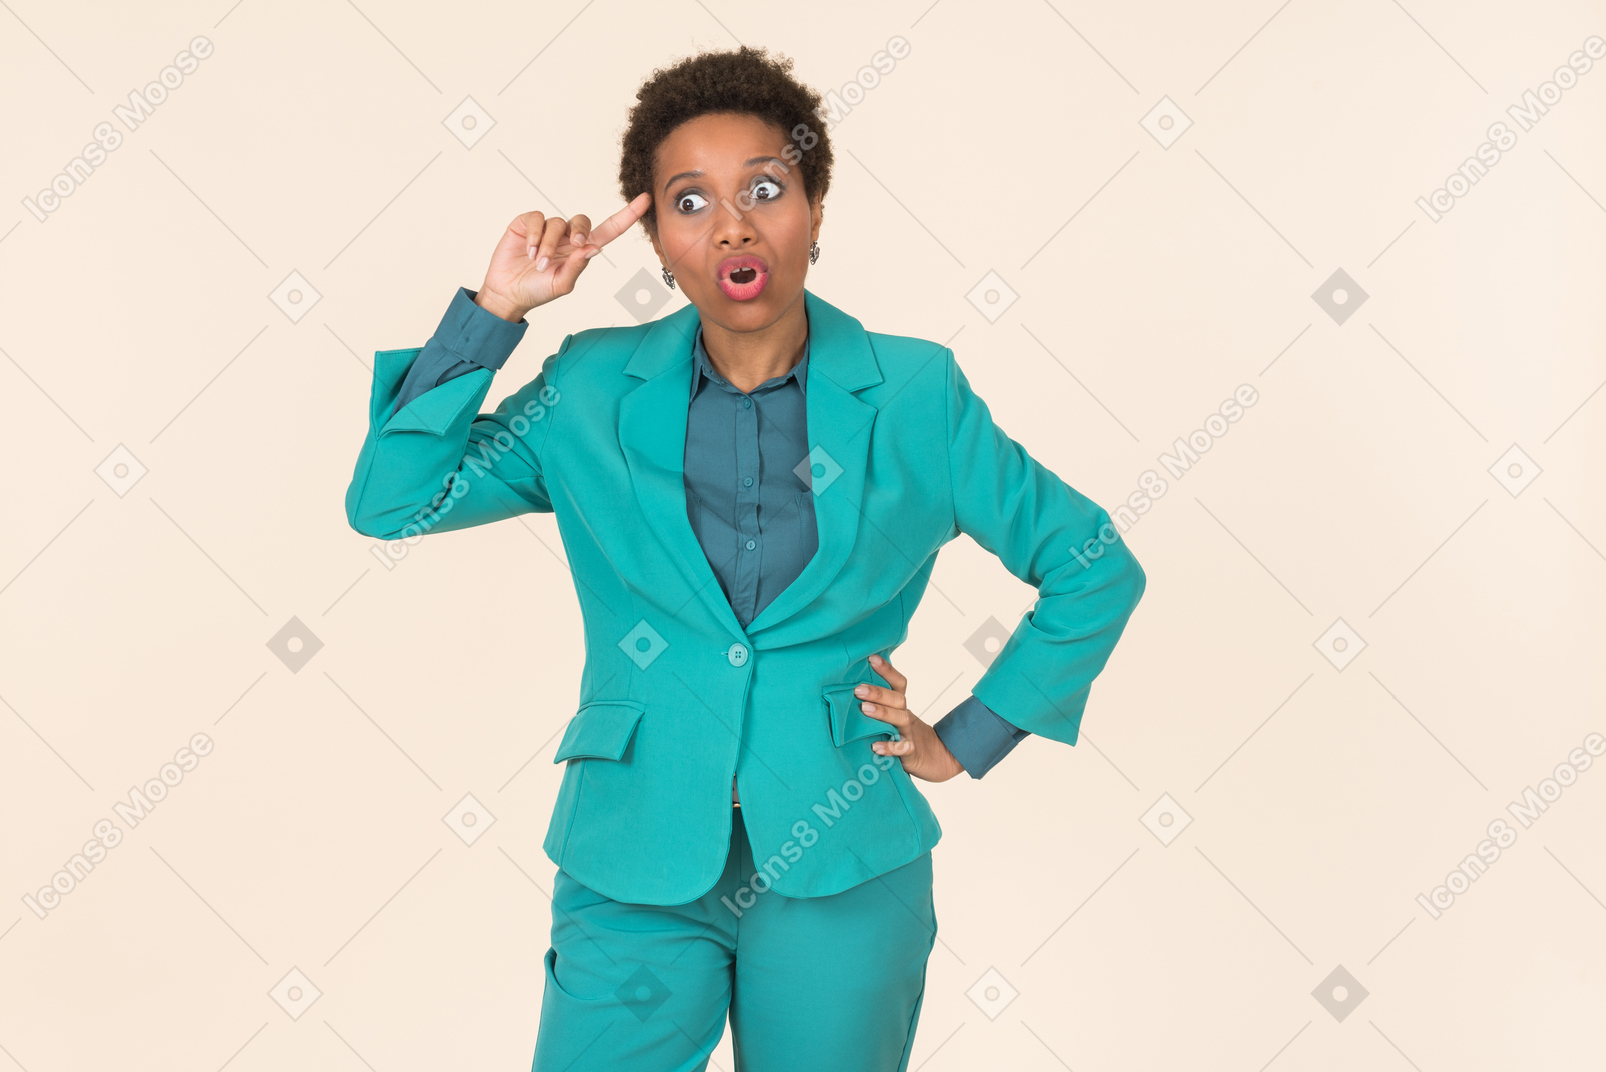 짧은 머리를 가진 흑인 여성, 모든 파란색을 입고 평범한 파스텔 배경에 서서 감정적으로 보임